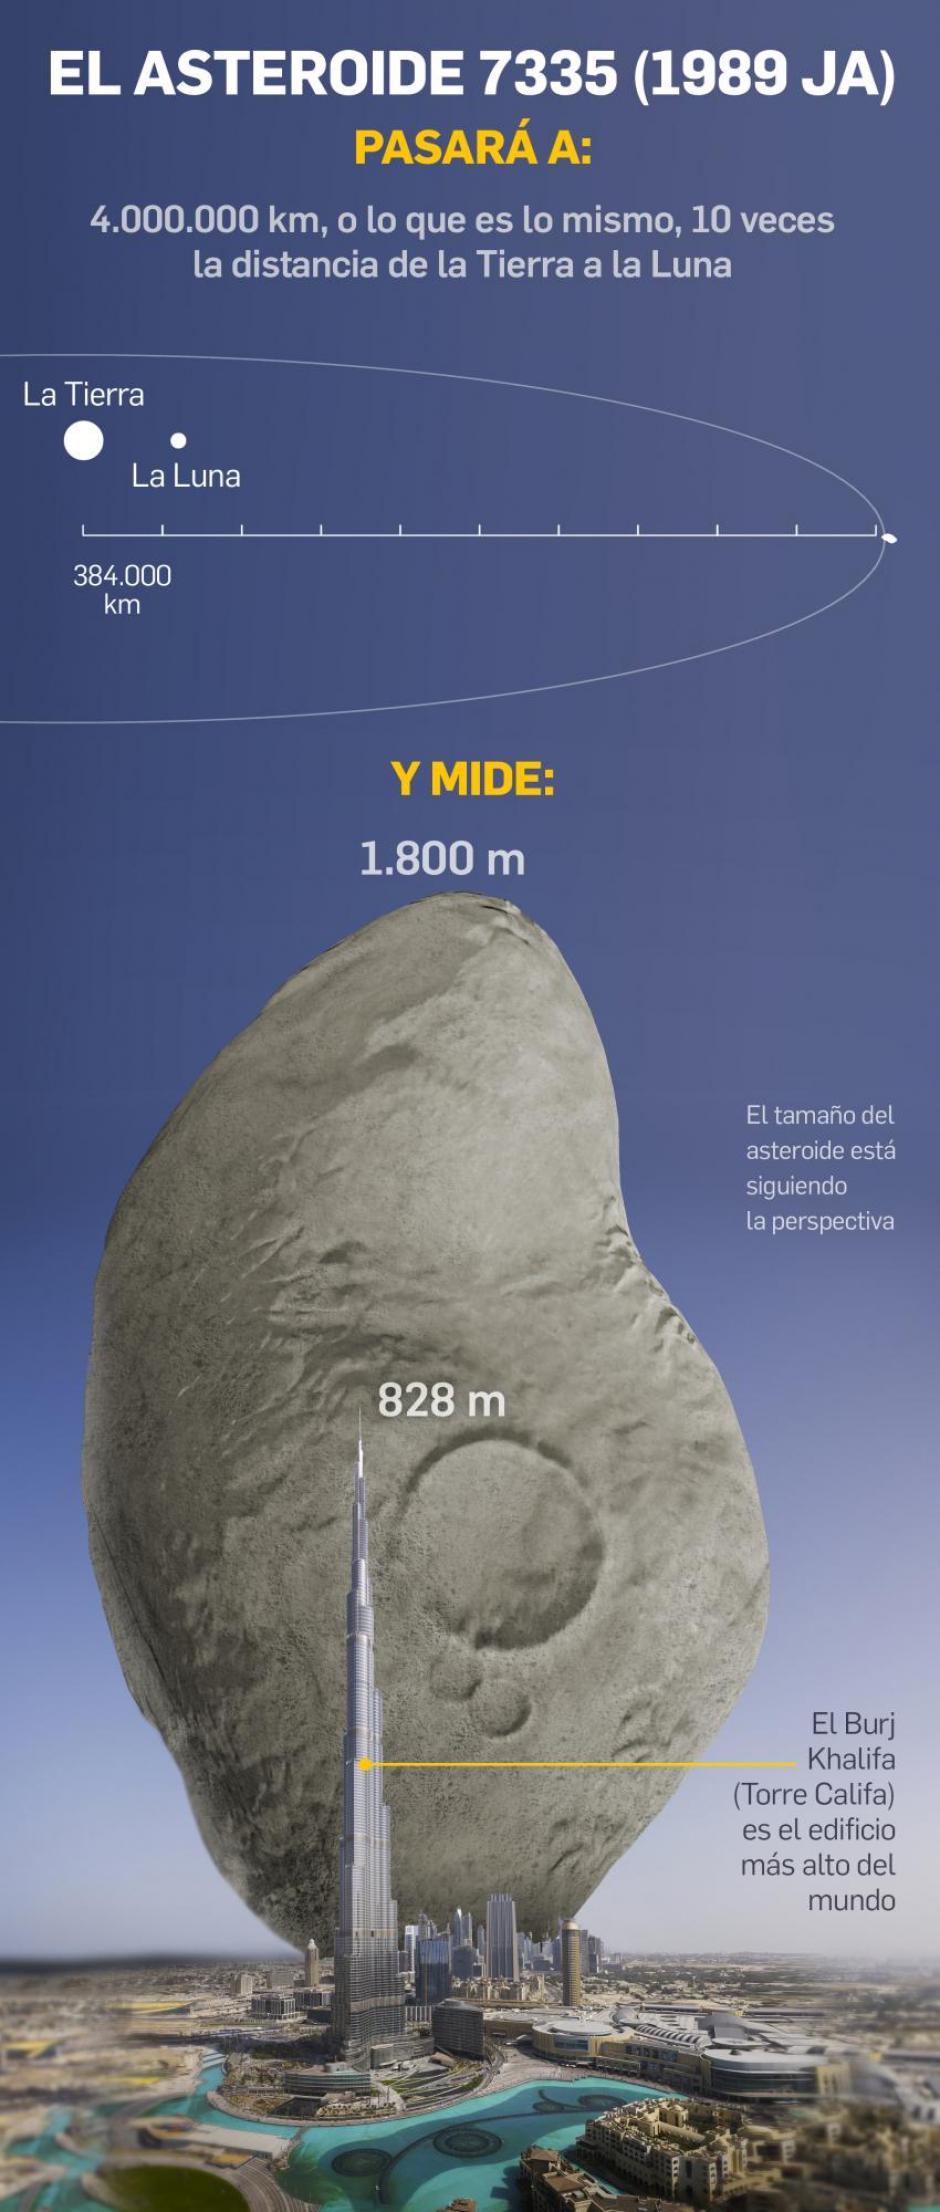 Asteroide 7335 comparado con el Burj Khalifa